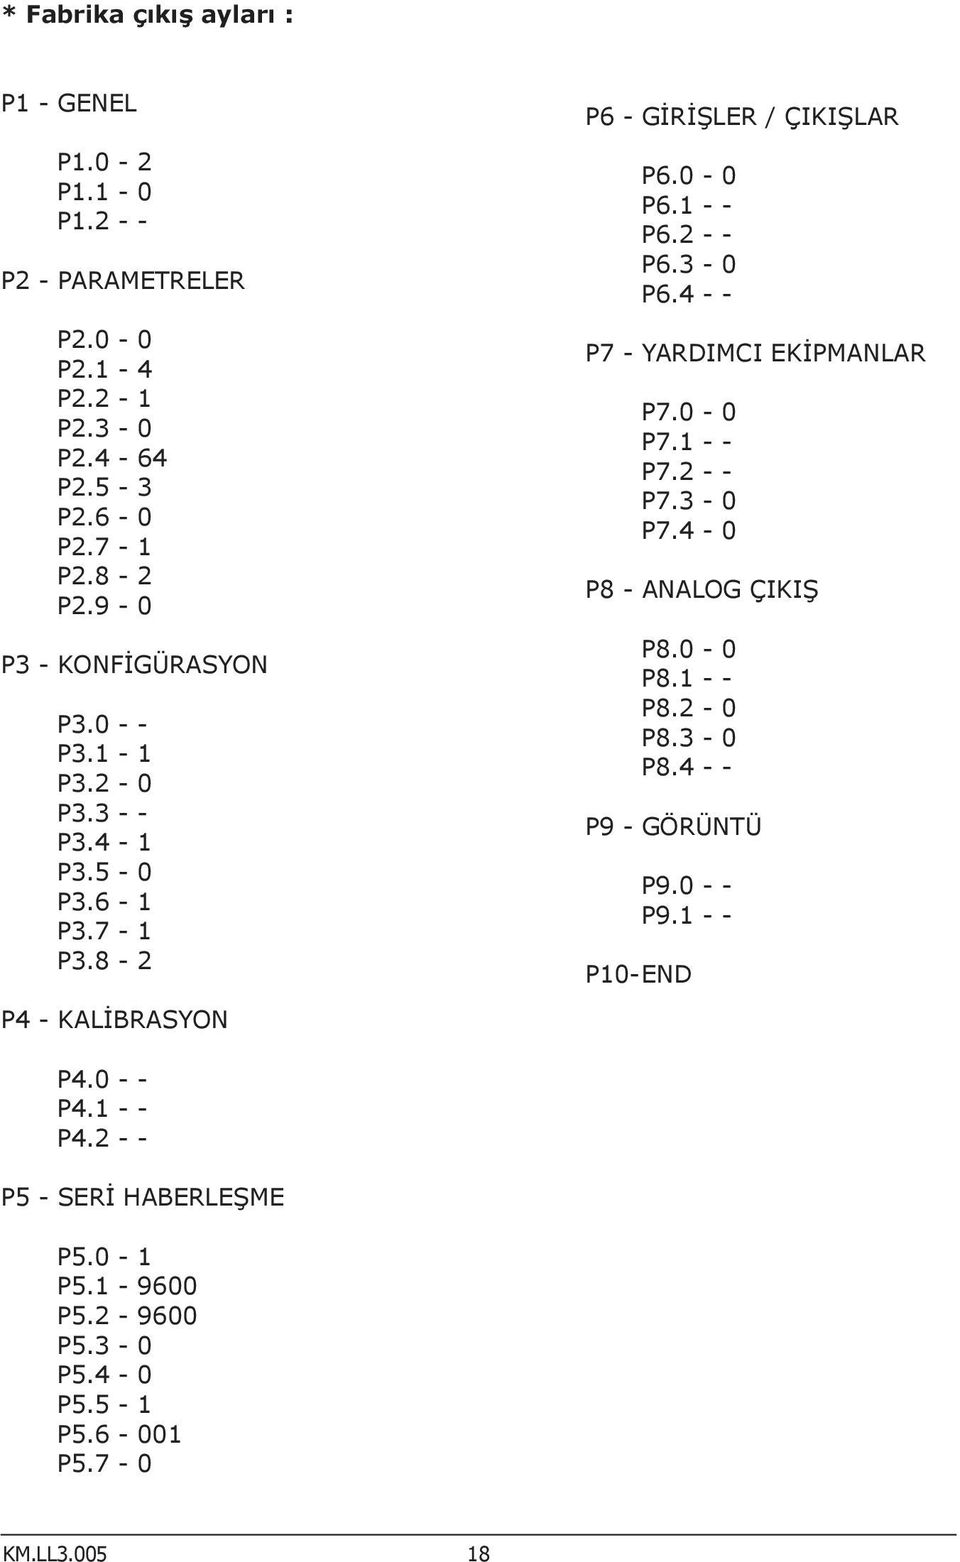 2 - - P6.3-0 P6.4 - - P7 - YARDIMCI EKİPMANLAR P7.0-0 P7.1 - - P7.2 - - P7.3-0 P7.4-0 P8 - ANALOG ÇIKIŞ P8.0-0 P8.1 - - P8.2-0 P8.3-0 P8.